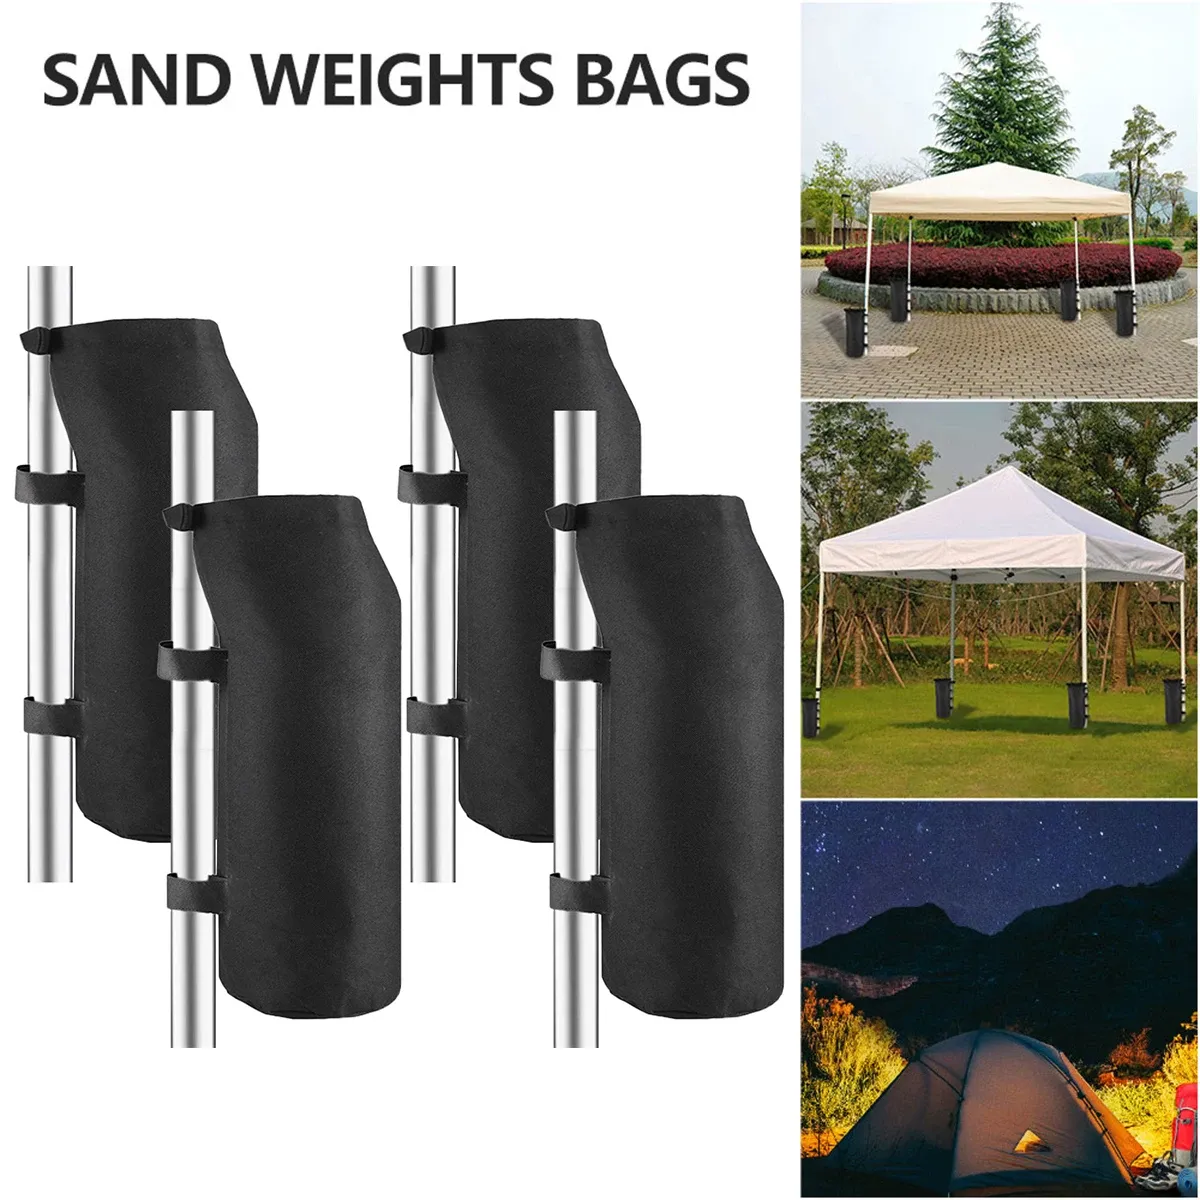 Pavillons, 4 Stück, 40,6 cm Gewicht, Sandsäcke, 600D-Oxford-Gewebe, Baldachin-Gewichte, Gewichte, Pavillon-Zelt-Sandsäcke für Outdoor-Pop-Up-Überdachung